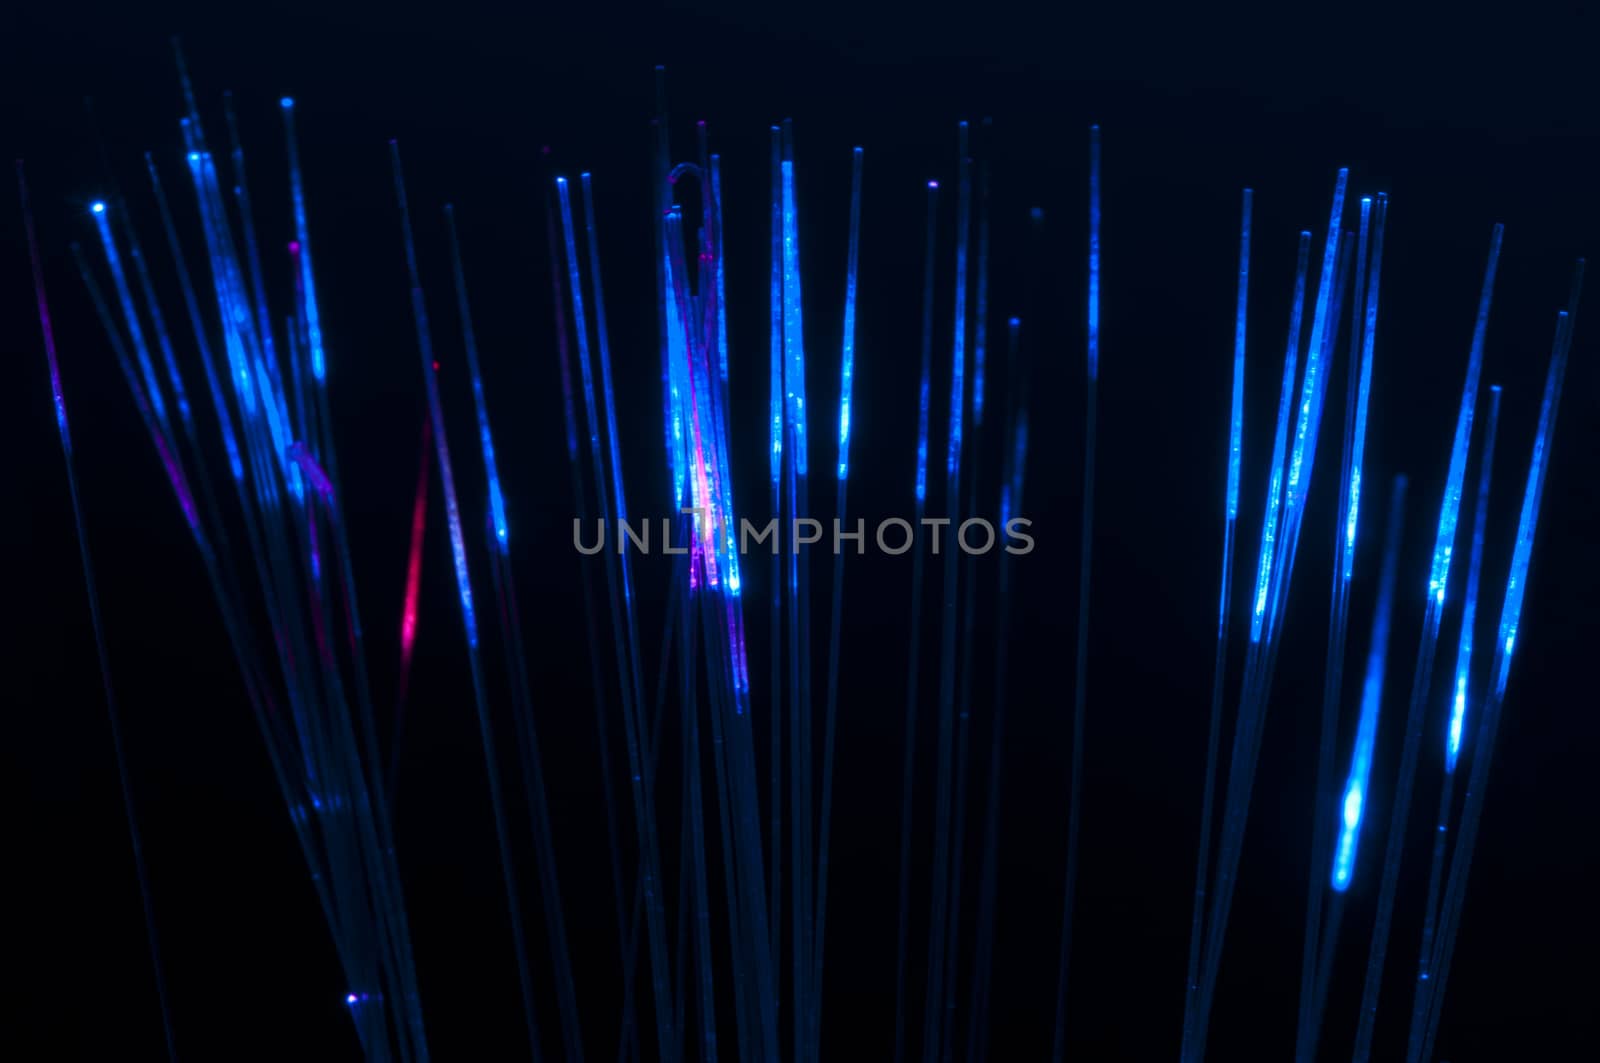 Blue colors optical fibers